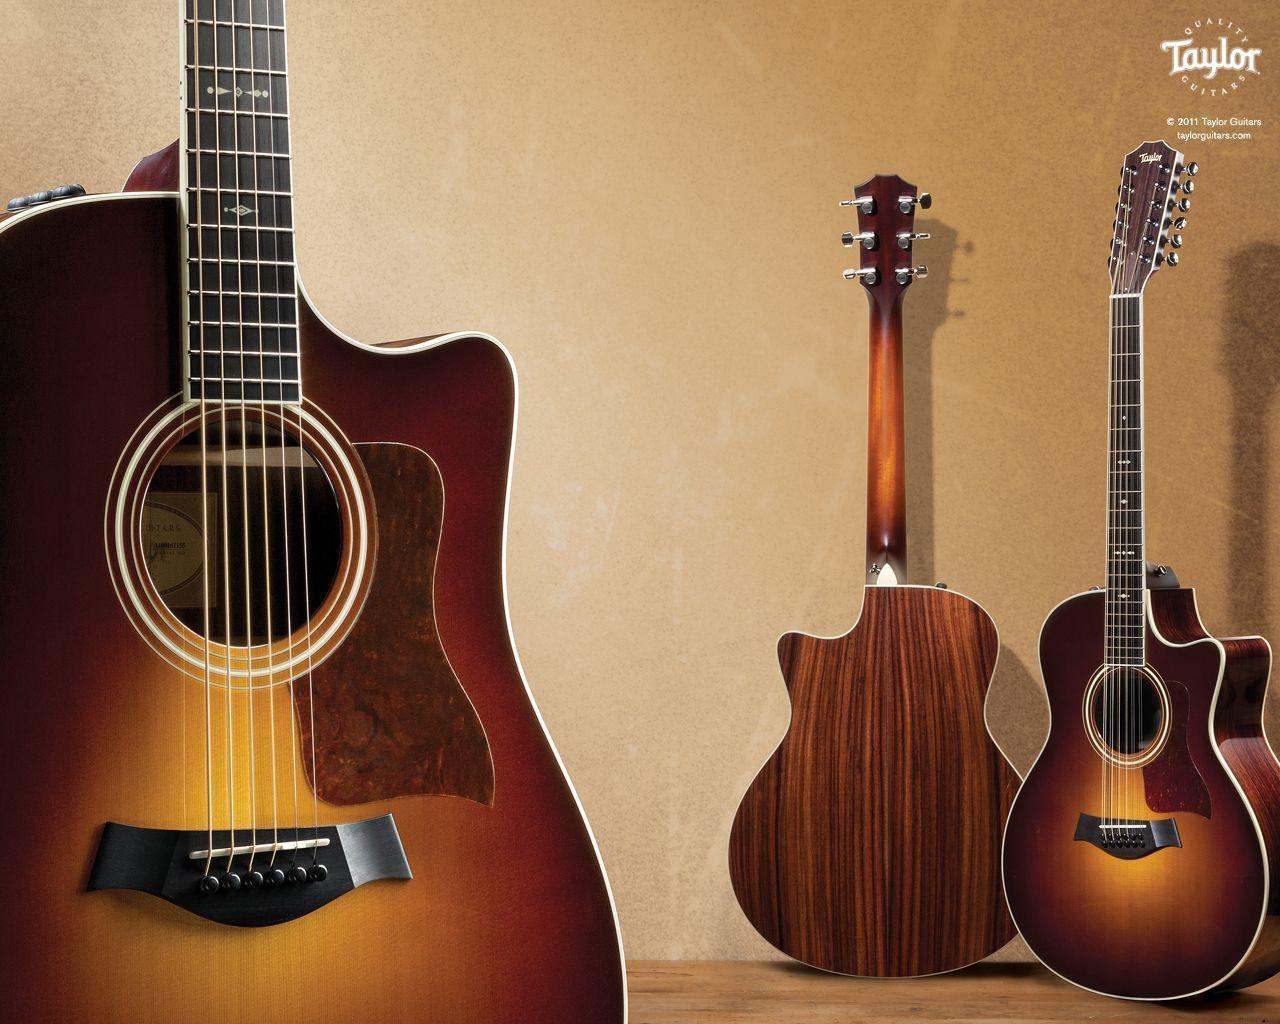 Taylor Guitars: Taylor Guitars